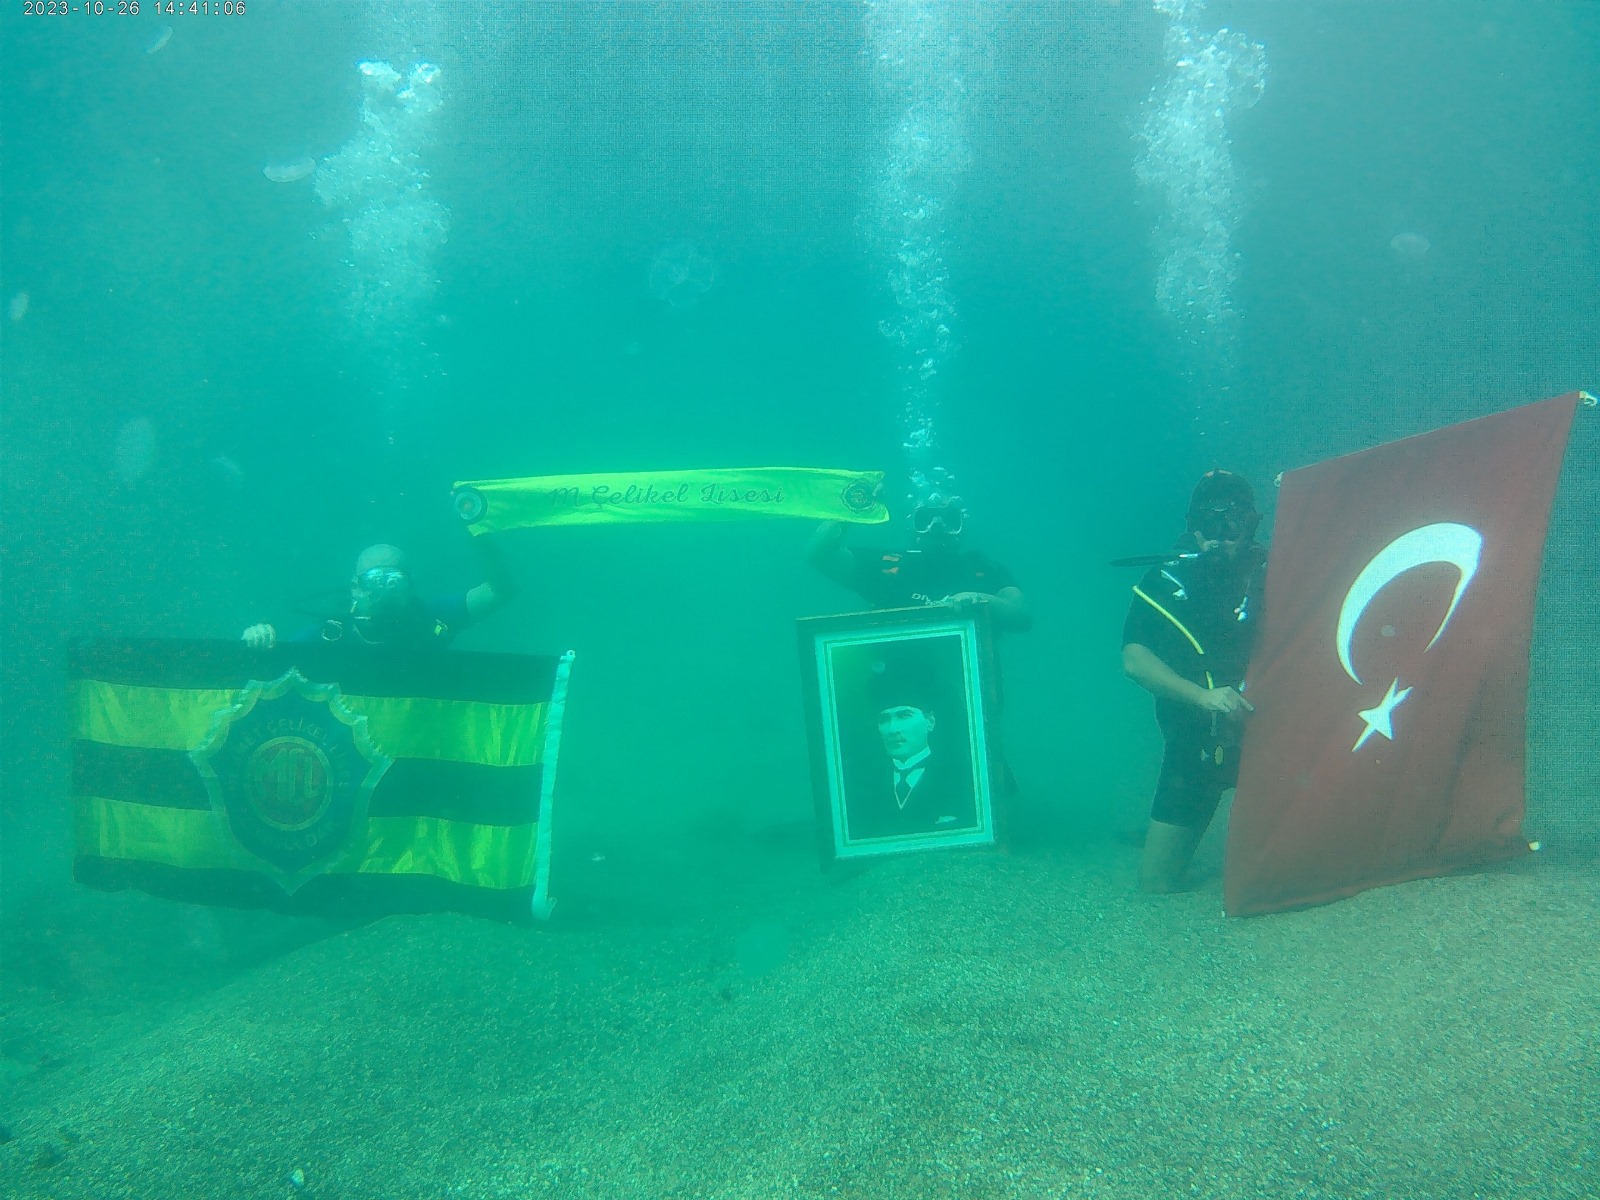 Zonguldak’ta öğretmenler ve dalgıçlar denizin altında bayrak açarak 100. yılı kutladılar